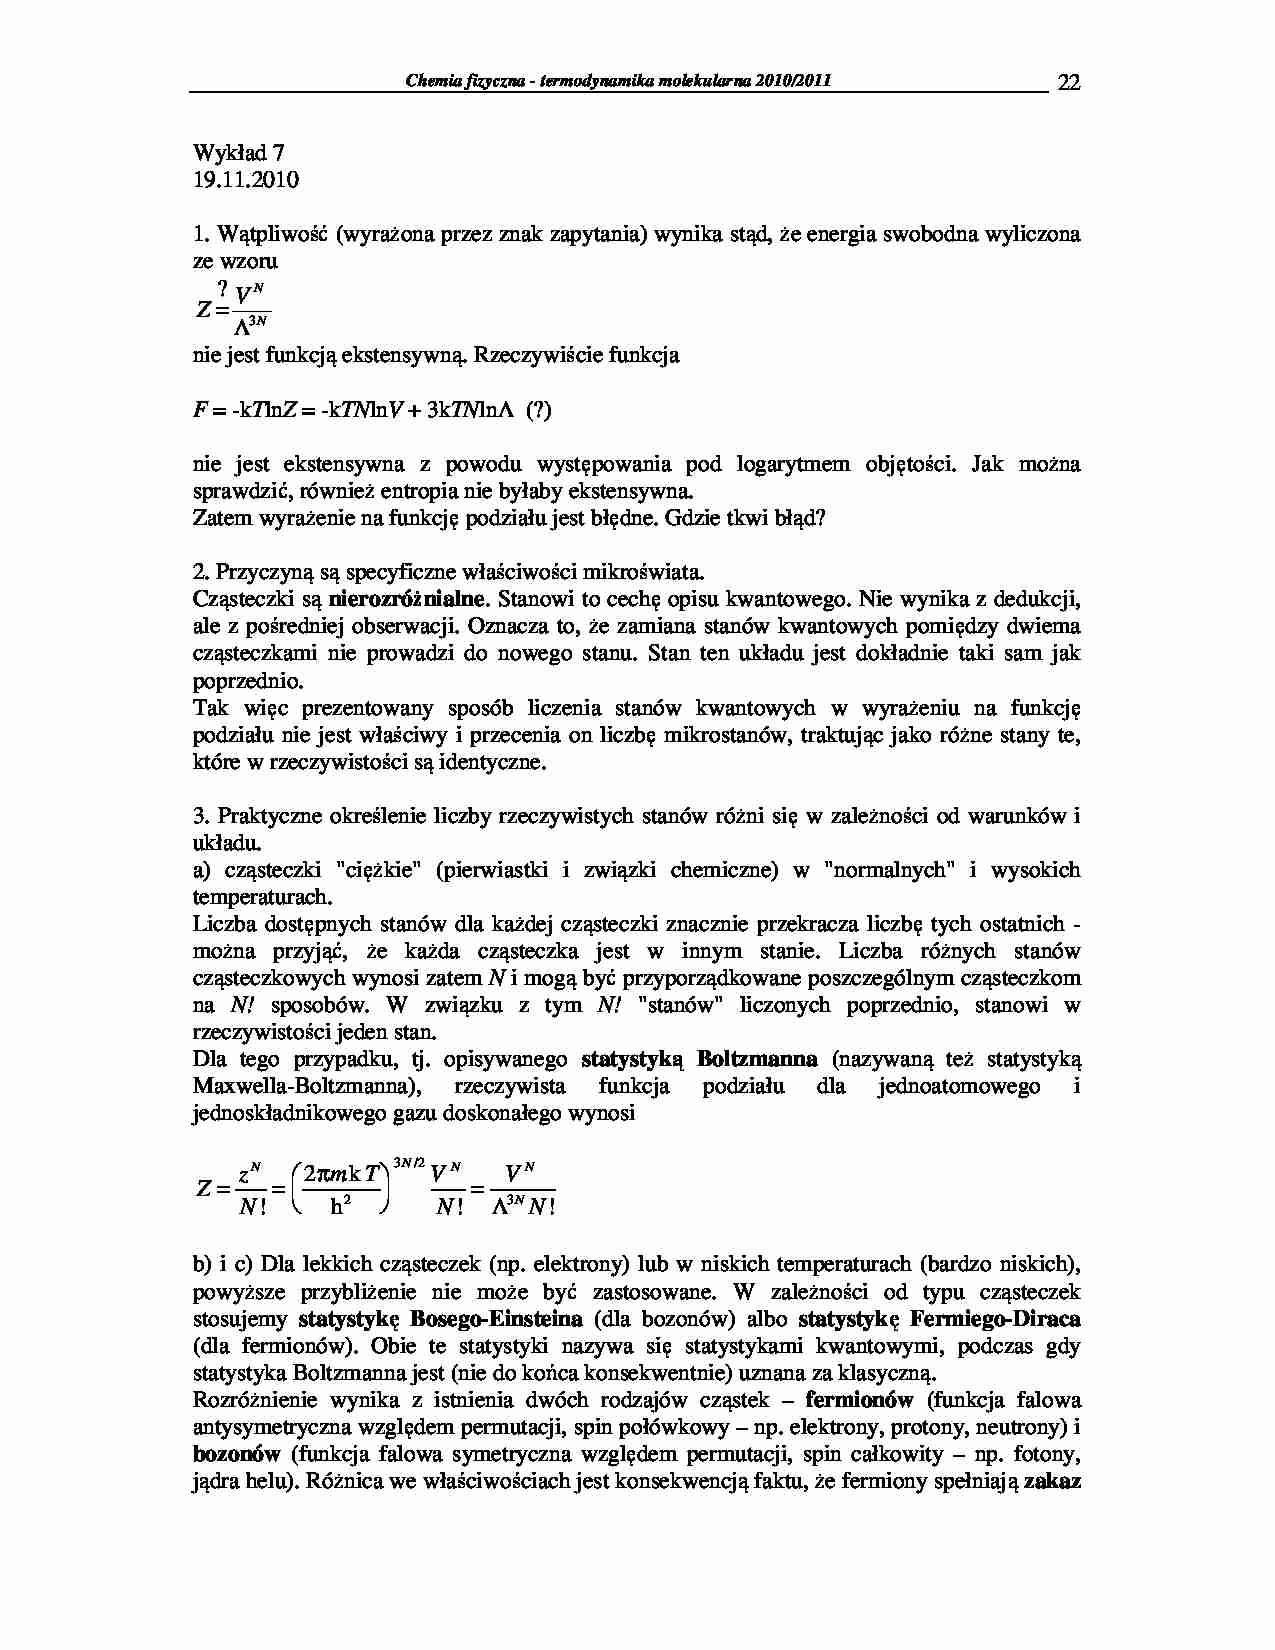 Chemia fizyczna - termodynamika molekularna 2009/2010-wykłady21 - strona 1